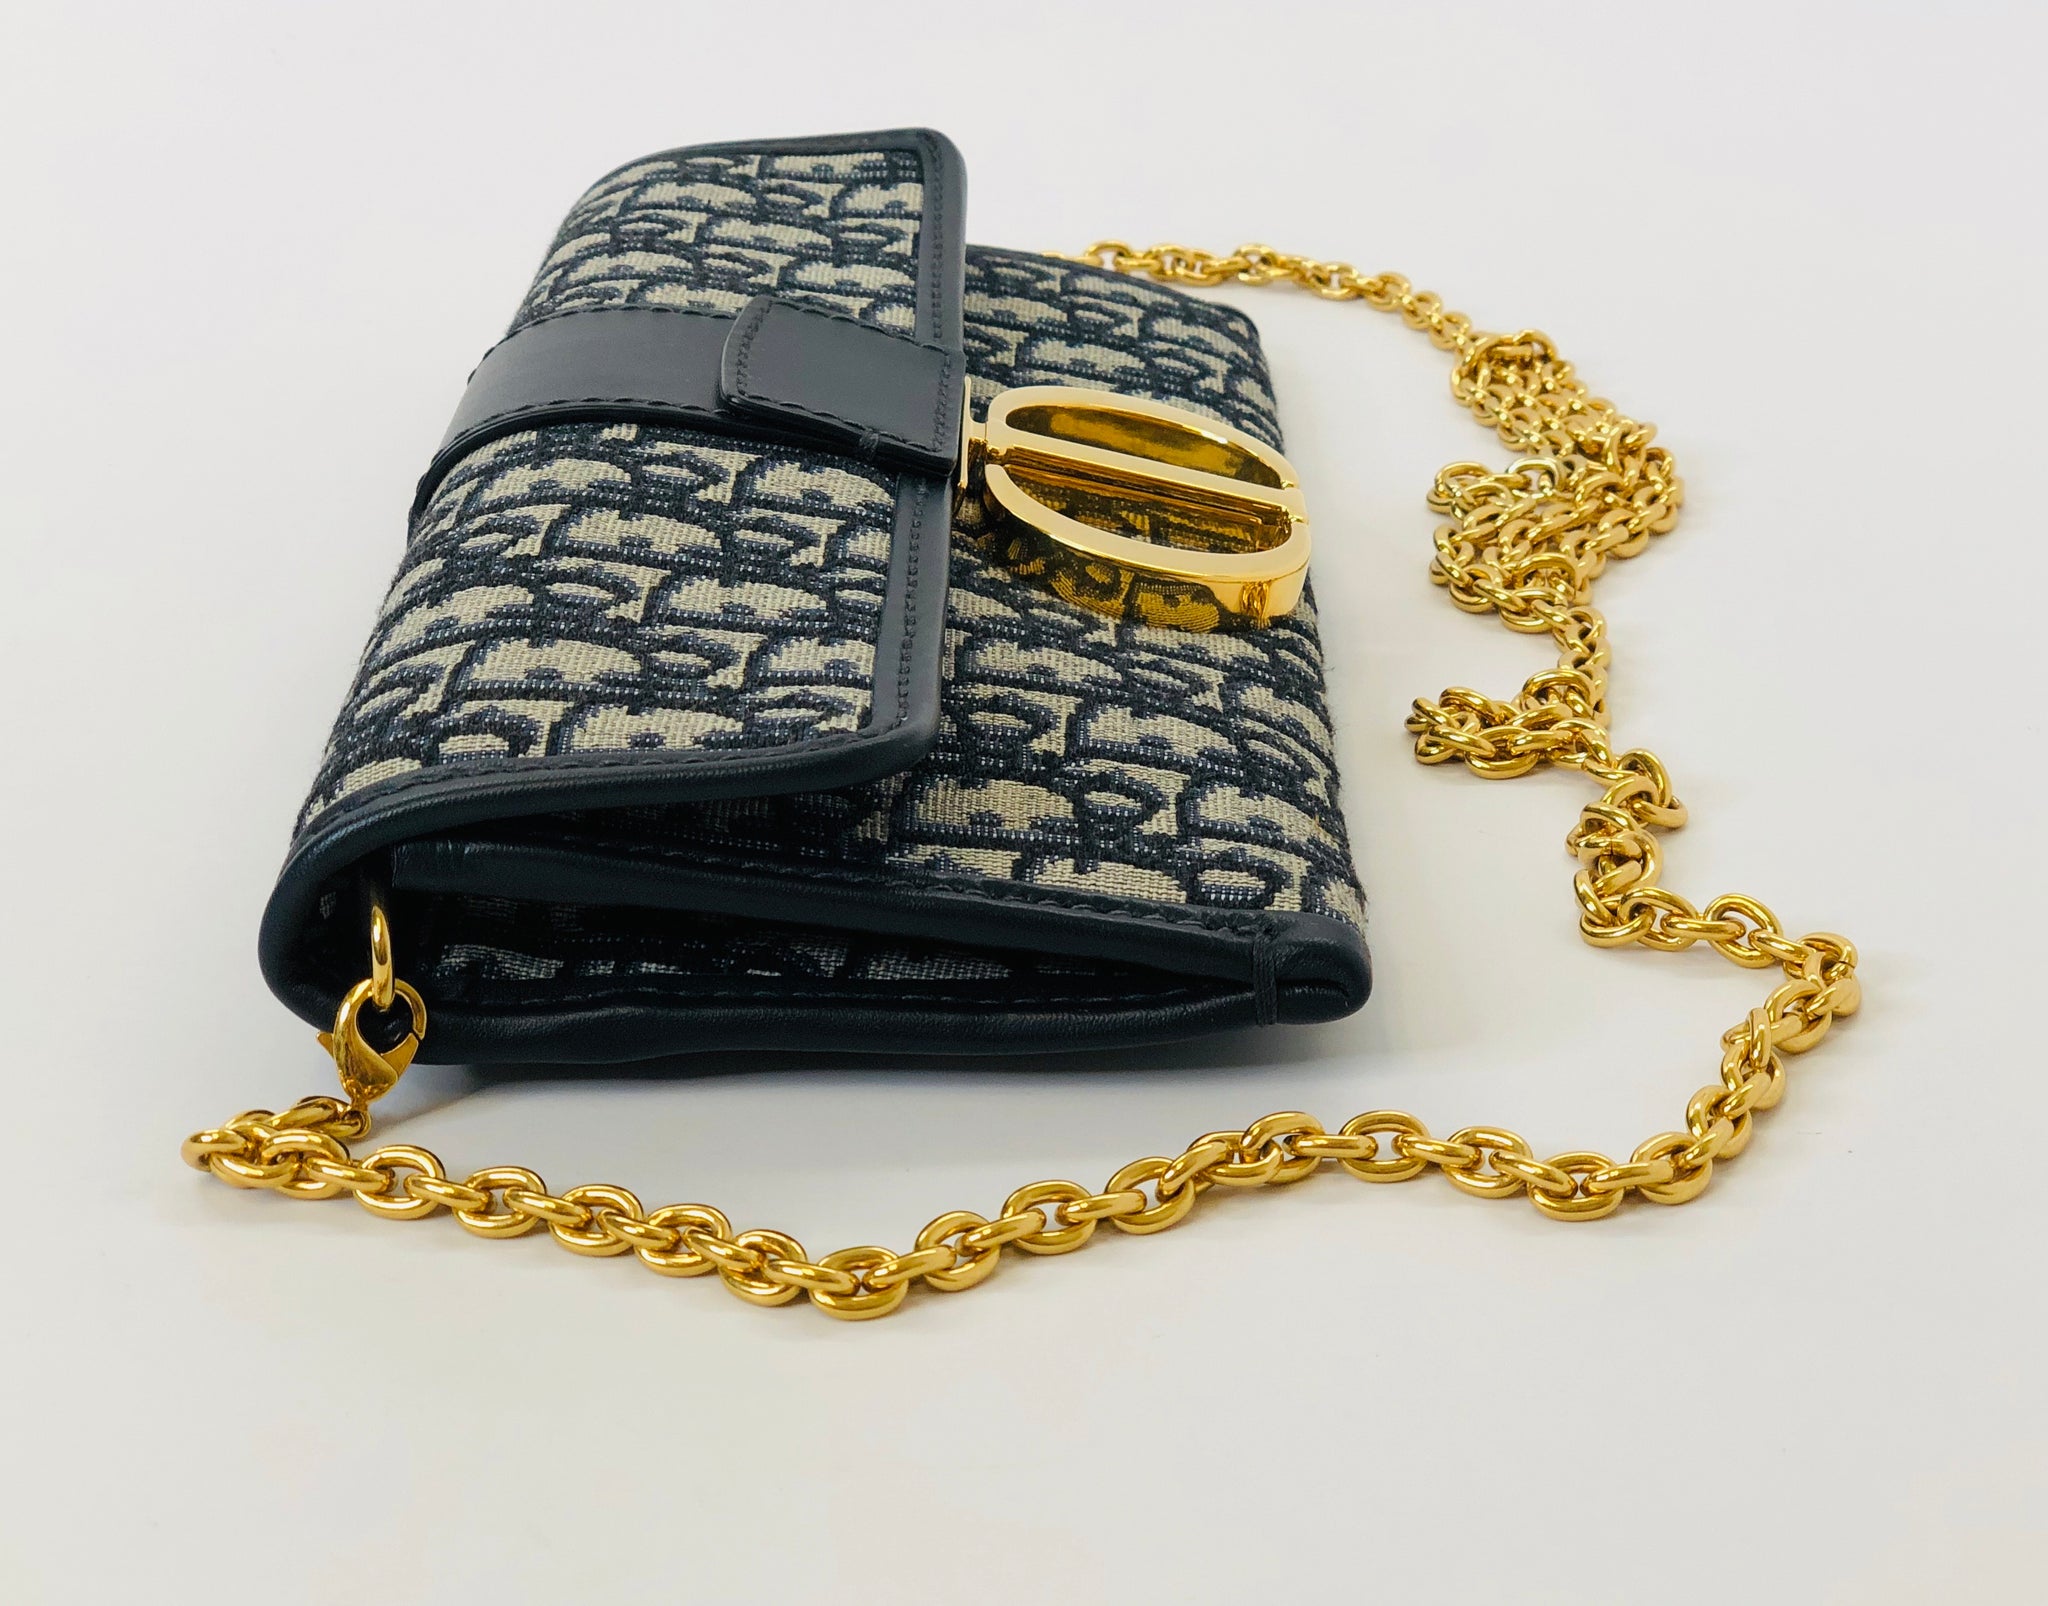 Christian Dior 30 Montaigne Clutch w/ Chain - Clutches, Handbags